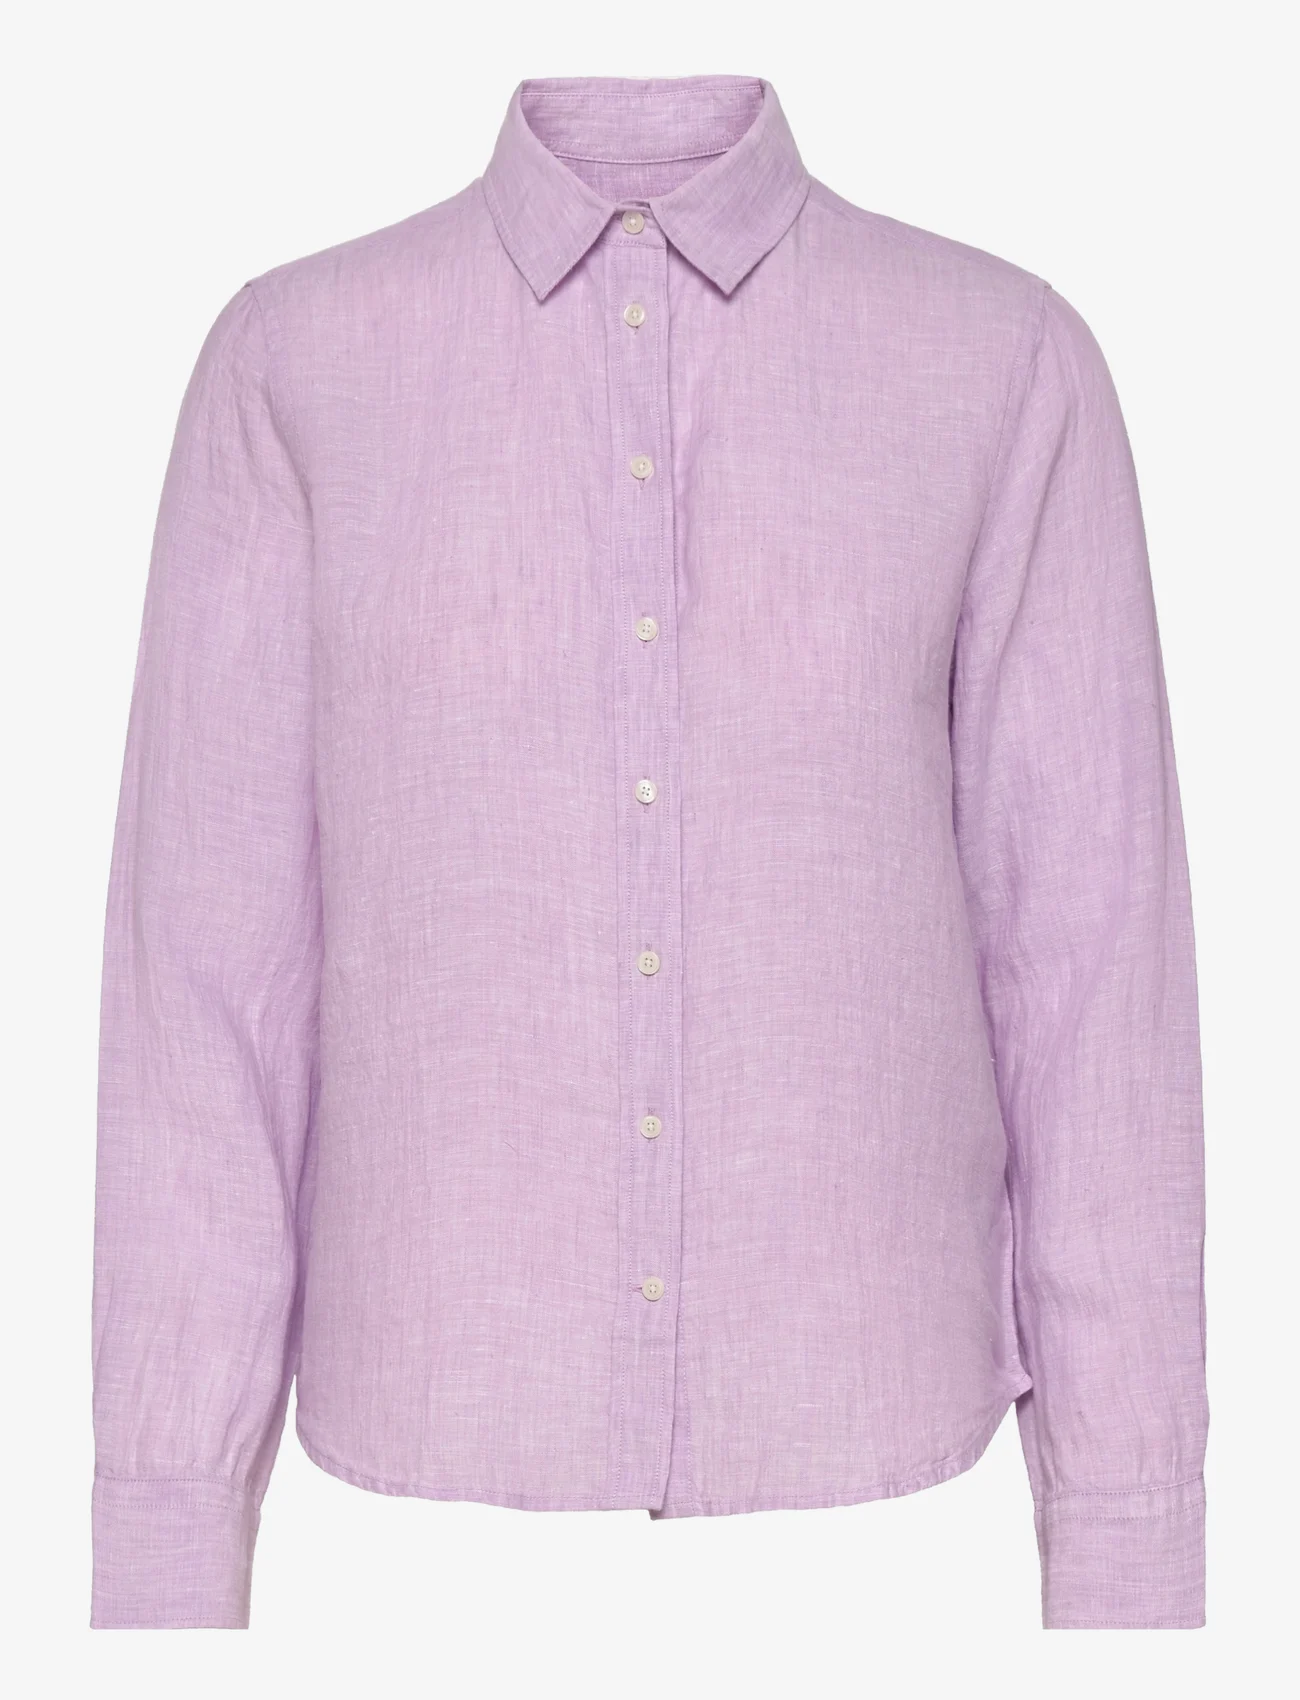 GANT - REG LINEN CHAMBRAY SHIRT - linen shirts - crocus purple - 0